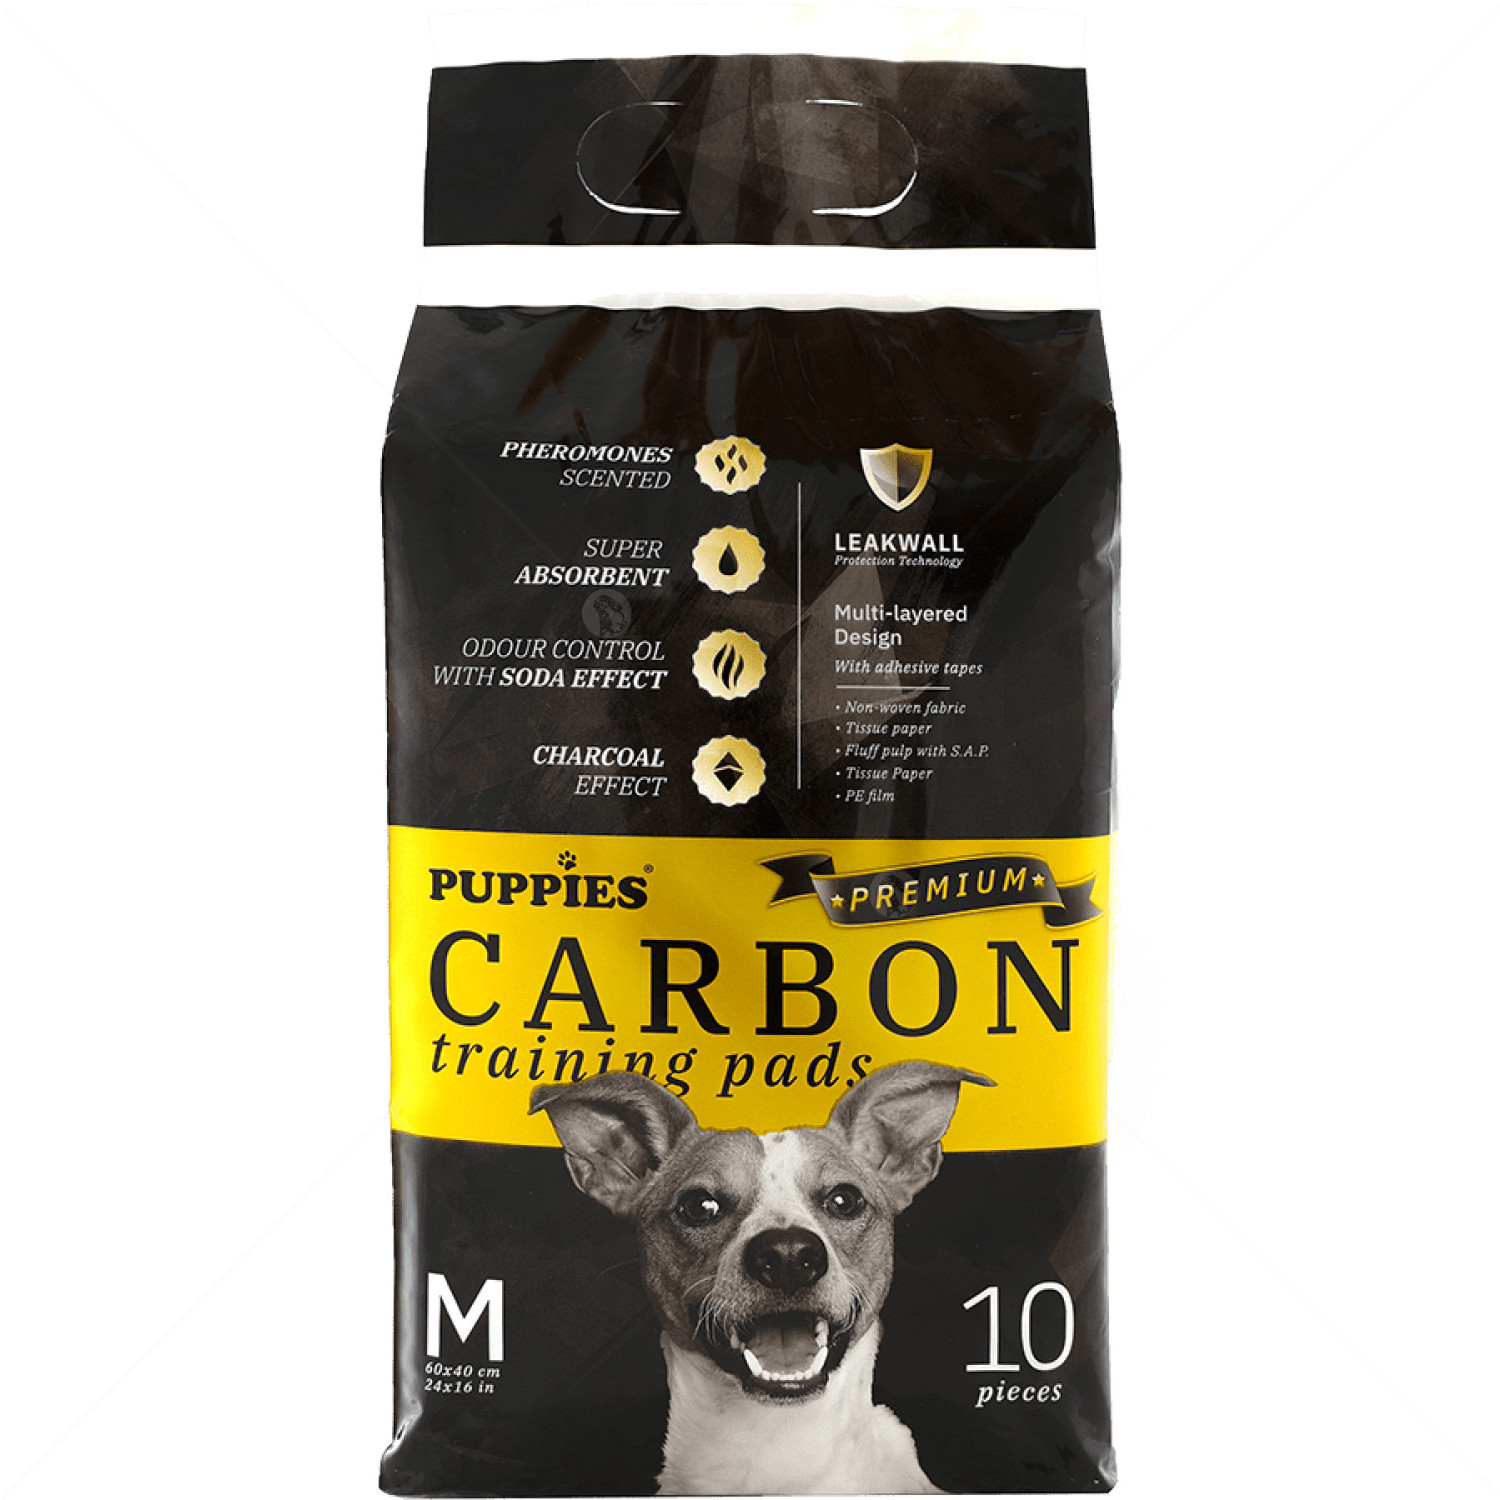 Хигиенни подложки/Пелени с активен въглен за кучета, M, PUPPIES Premium Carbon